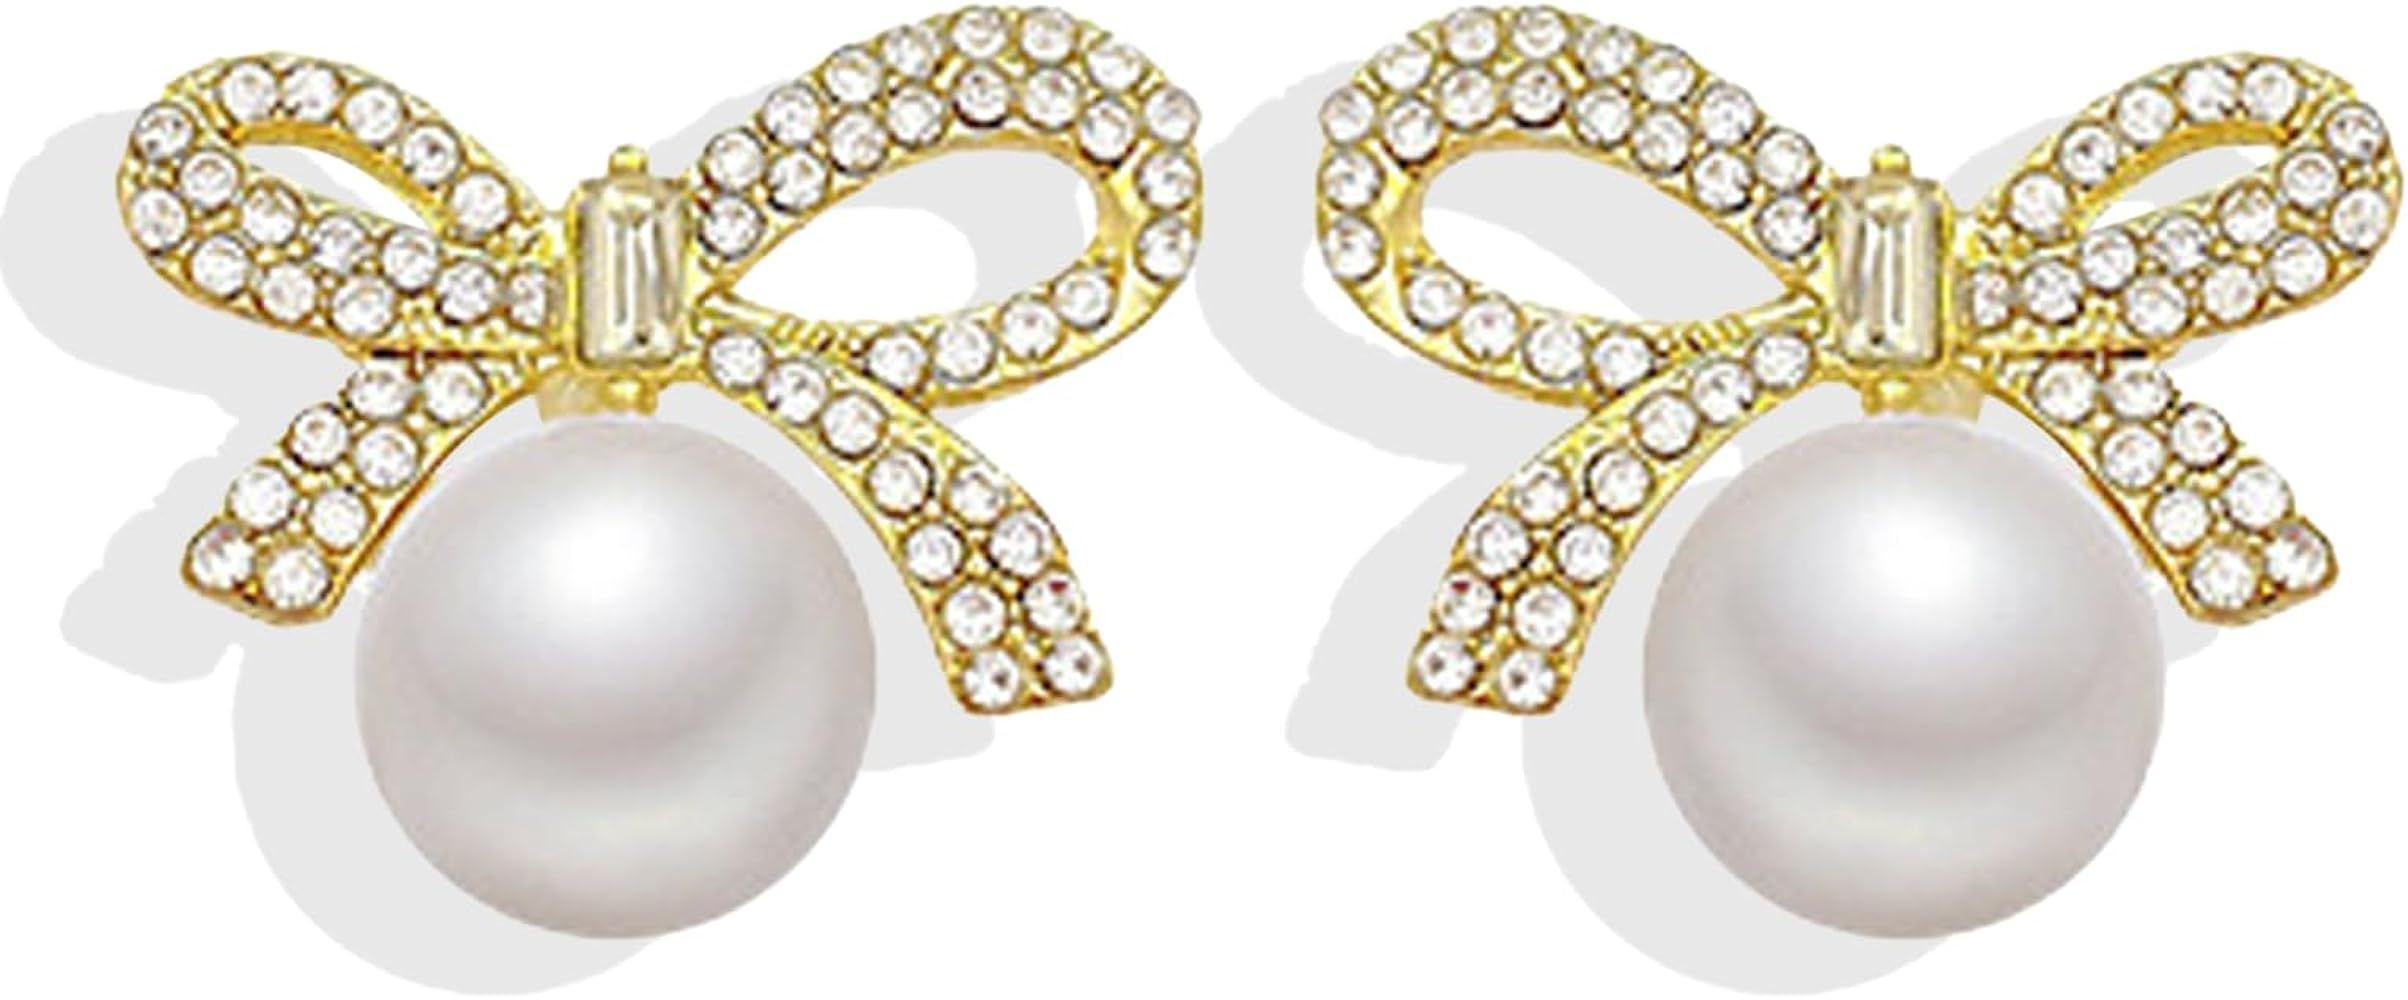 Silver Sparkly Bow Earrings for Women Rhinestone Chain Tassel Earring Crystal Fairy Teardrop Jewe... | Amazon (US)